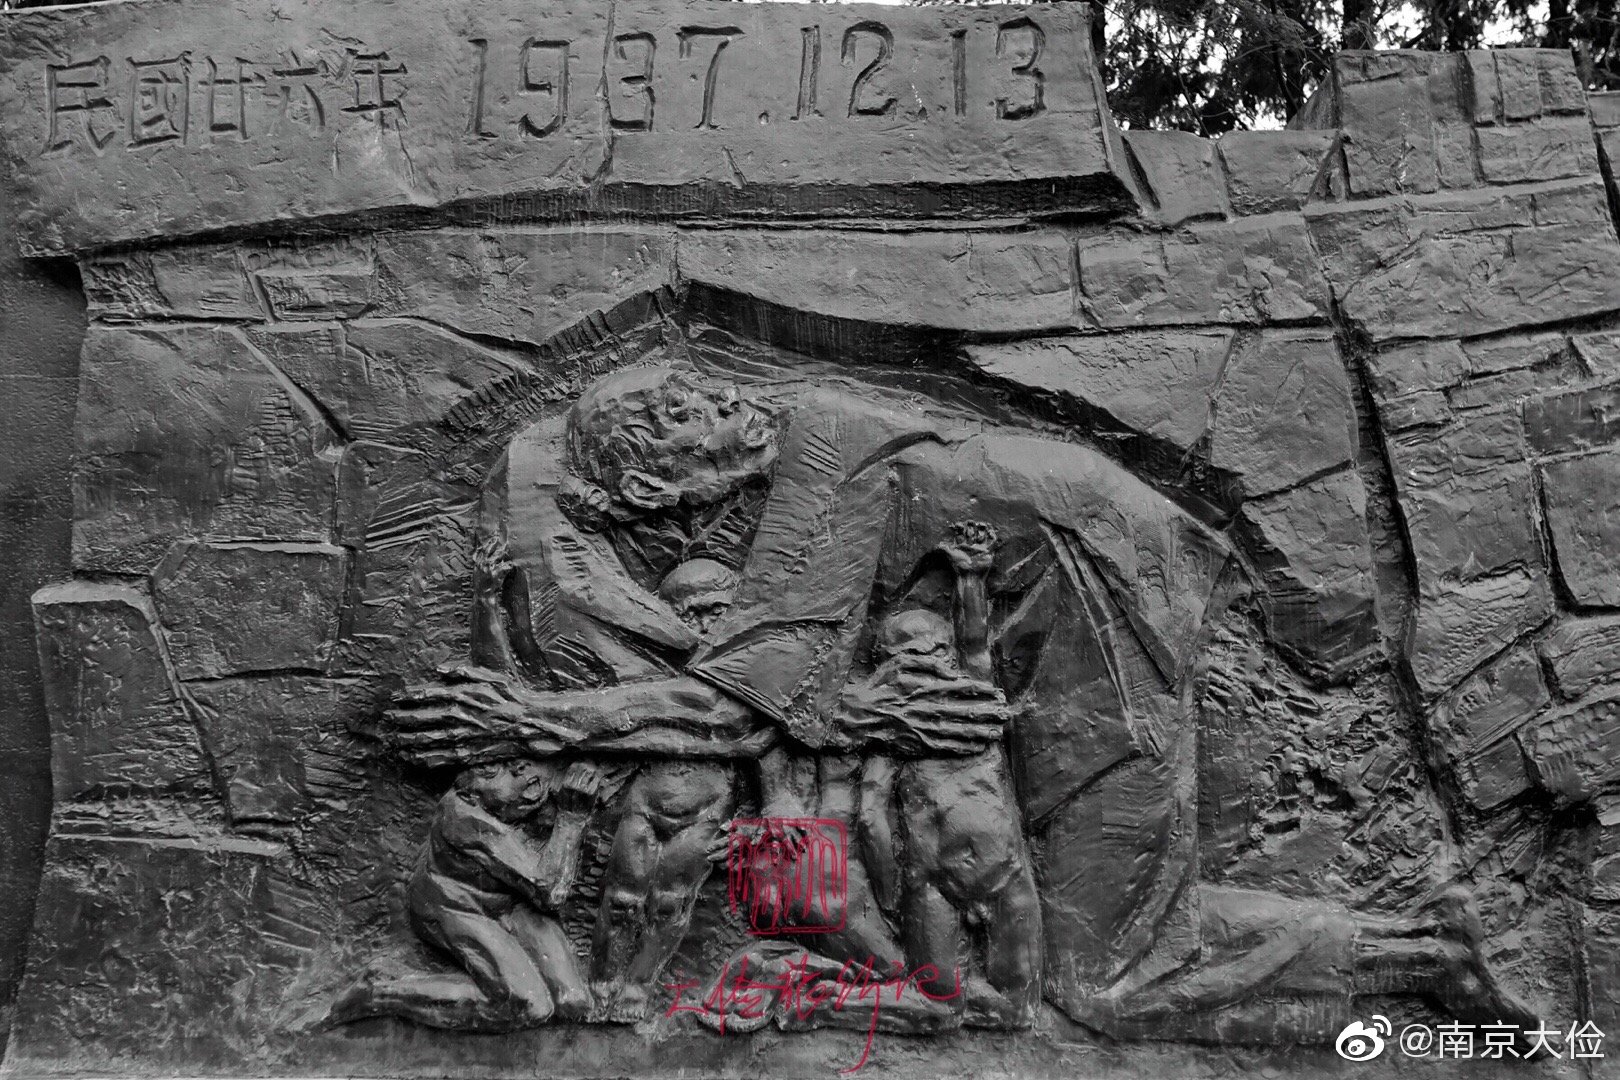 “永远跟党走·铭记历史”19硕第二支部组织参观侵华日军南京大屠杀遇难同胞纪念馆